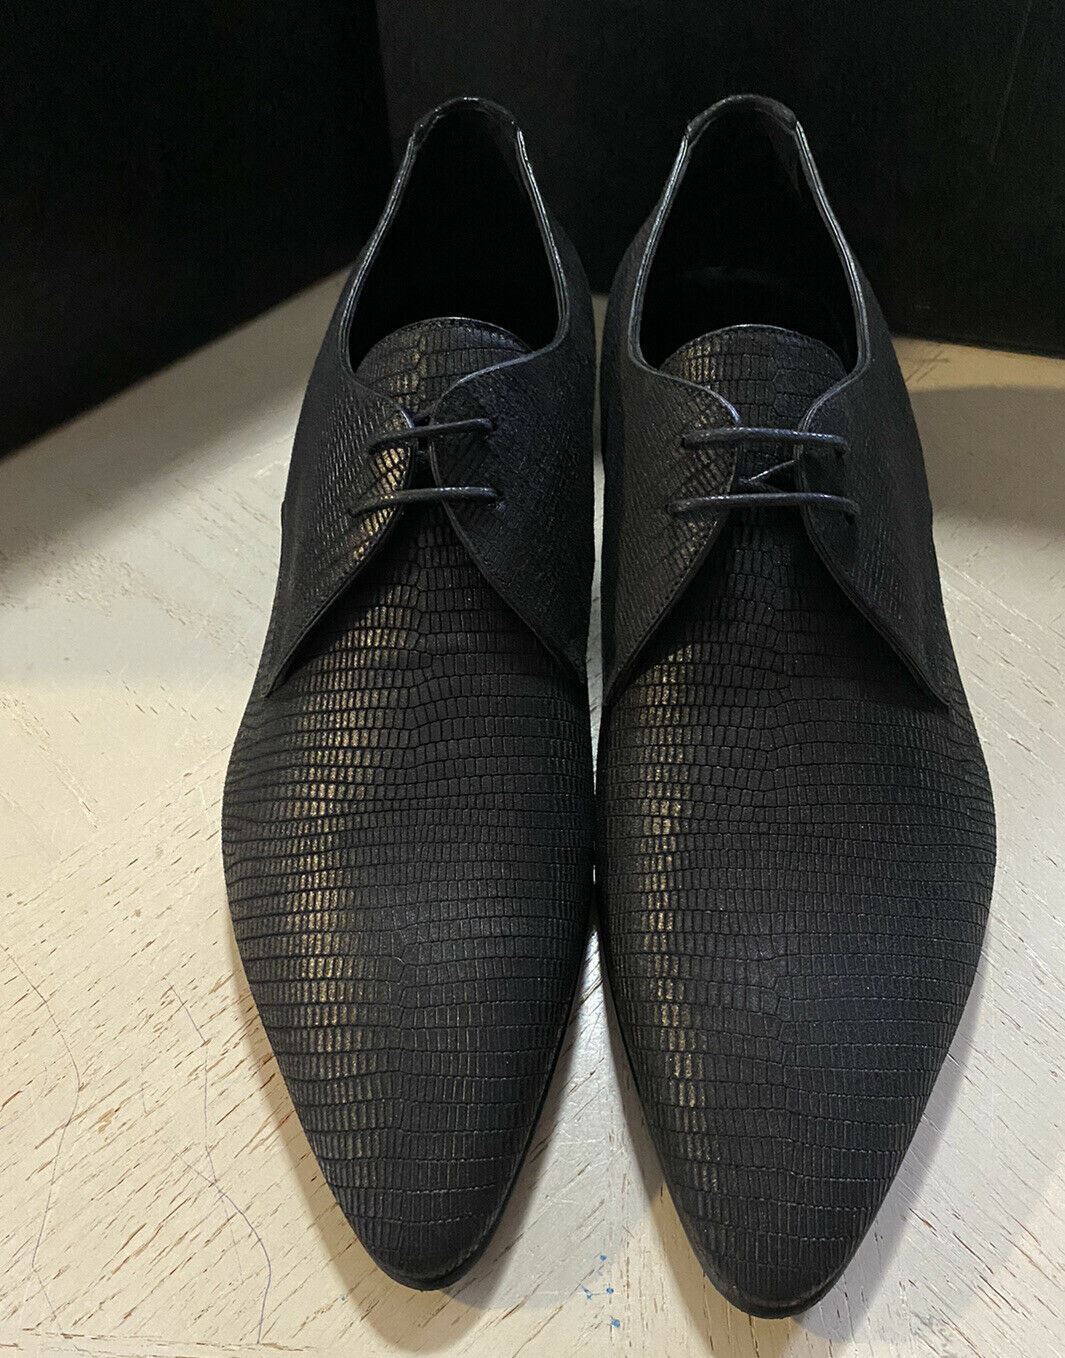 NIB $845 Saint Lauren Men’s Leather Dress Shoes Black 9 US / 42 Eu Italy